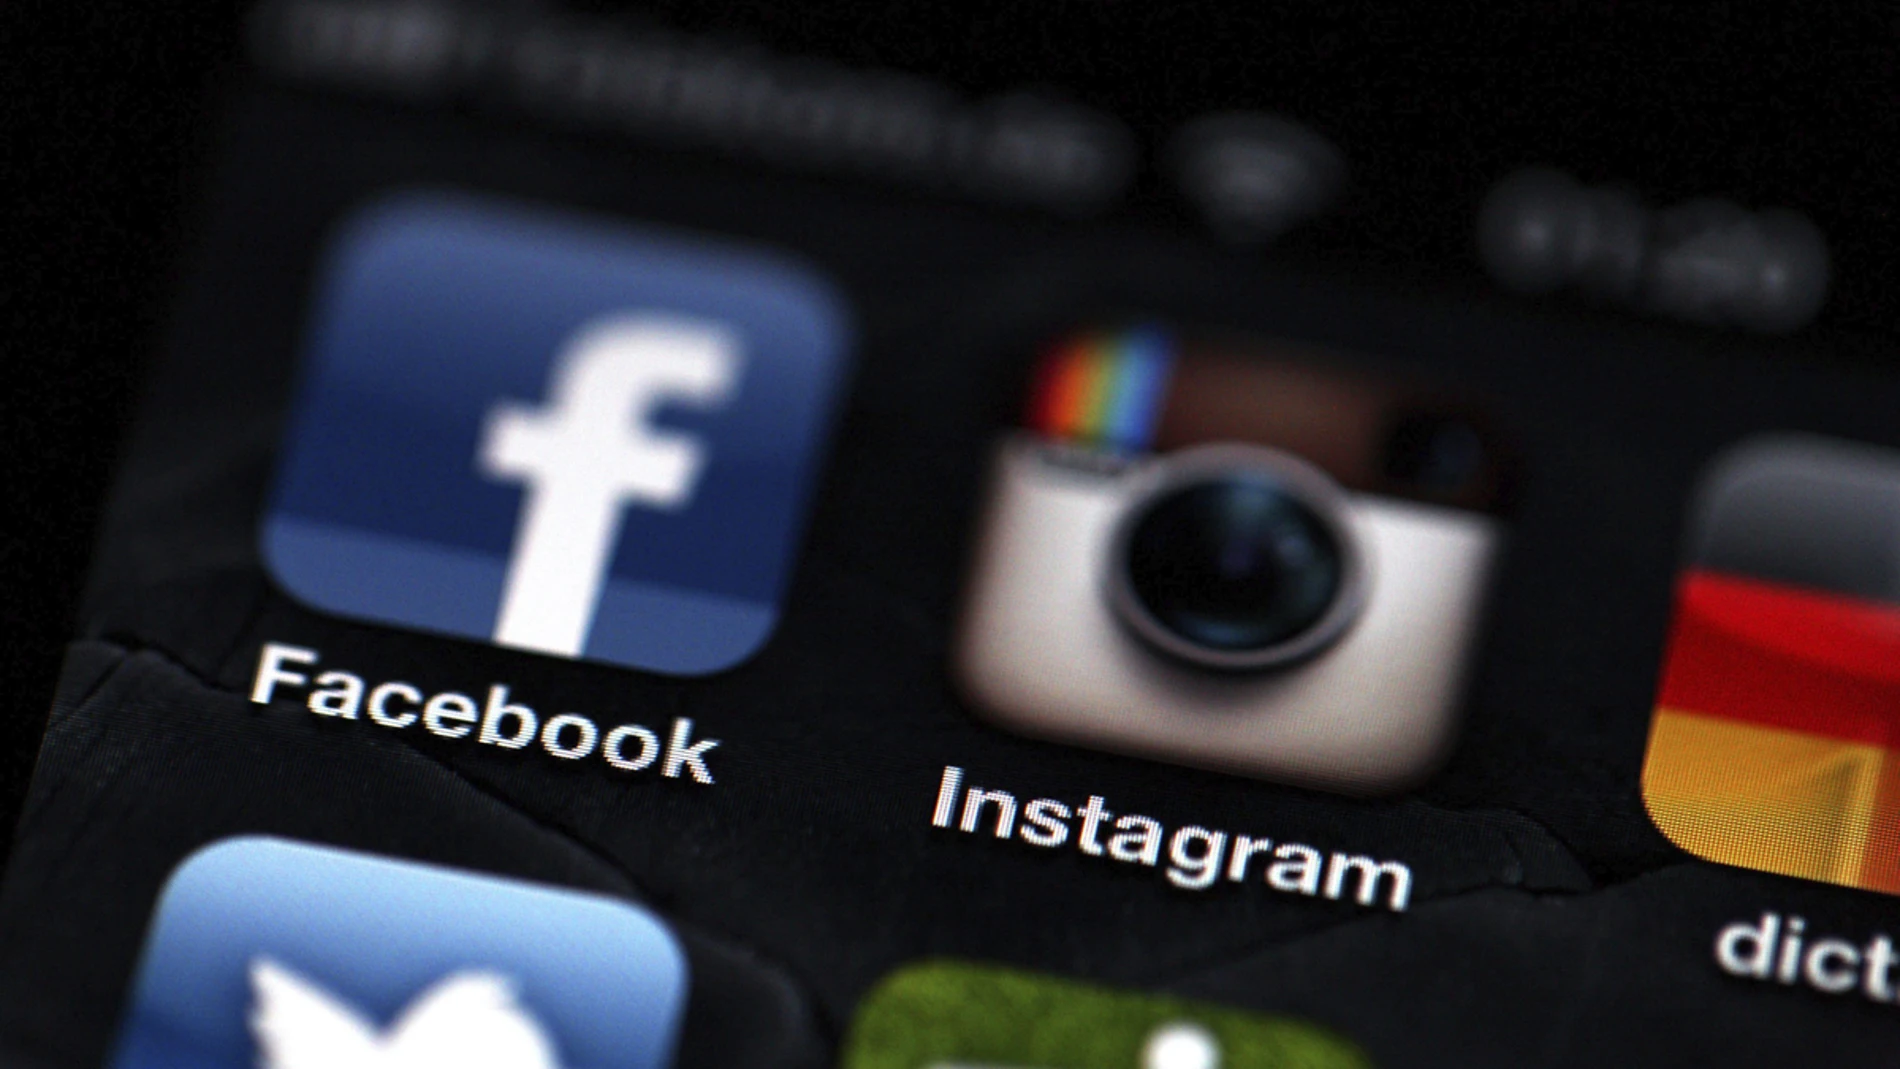 Logos de Facebook e Instagram en un teléfono Iphone